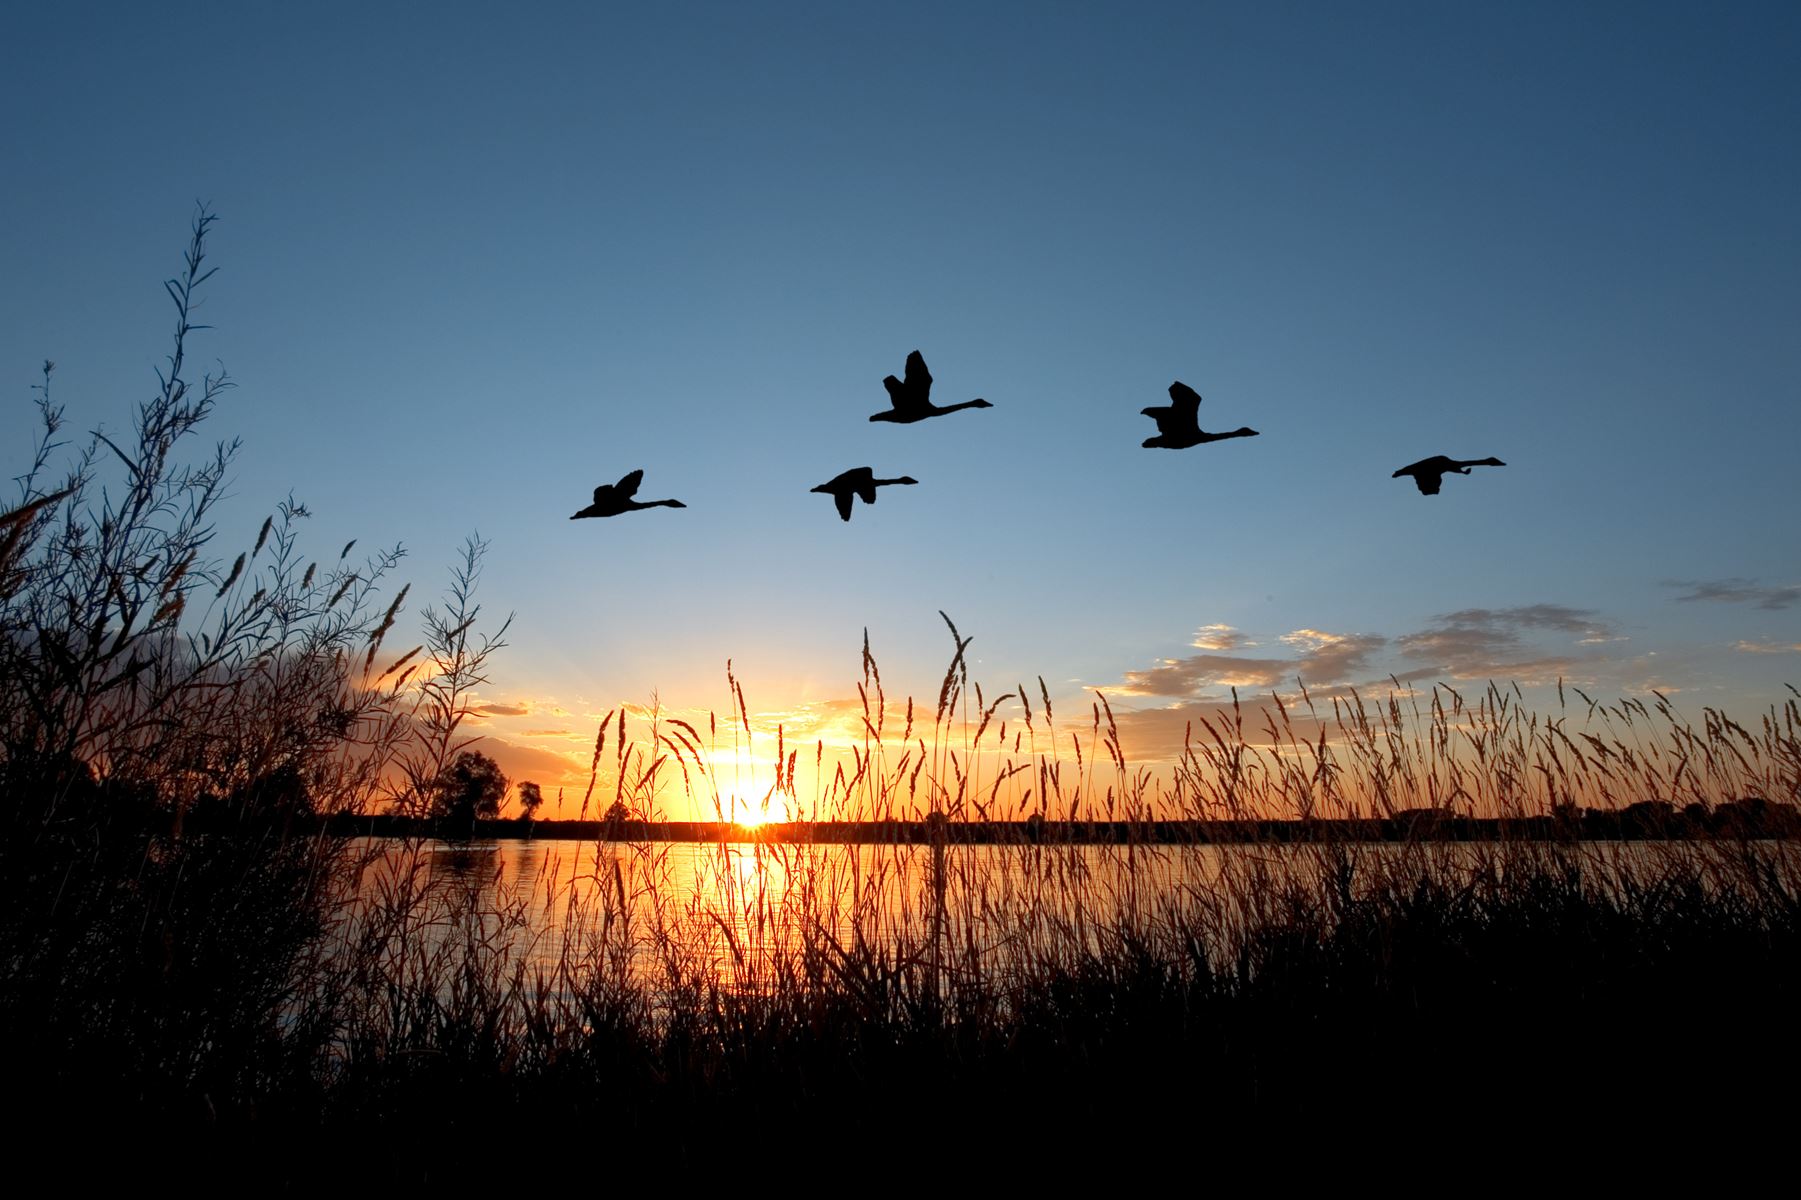 ducks flying over pond during sunset